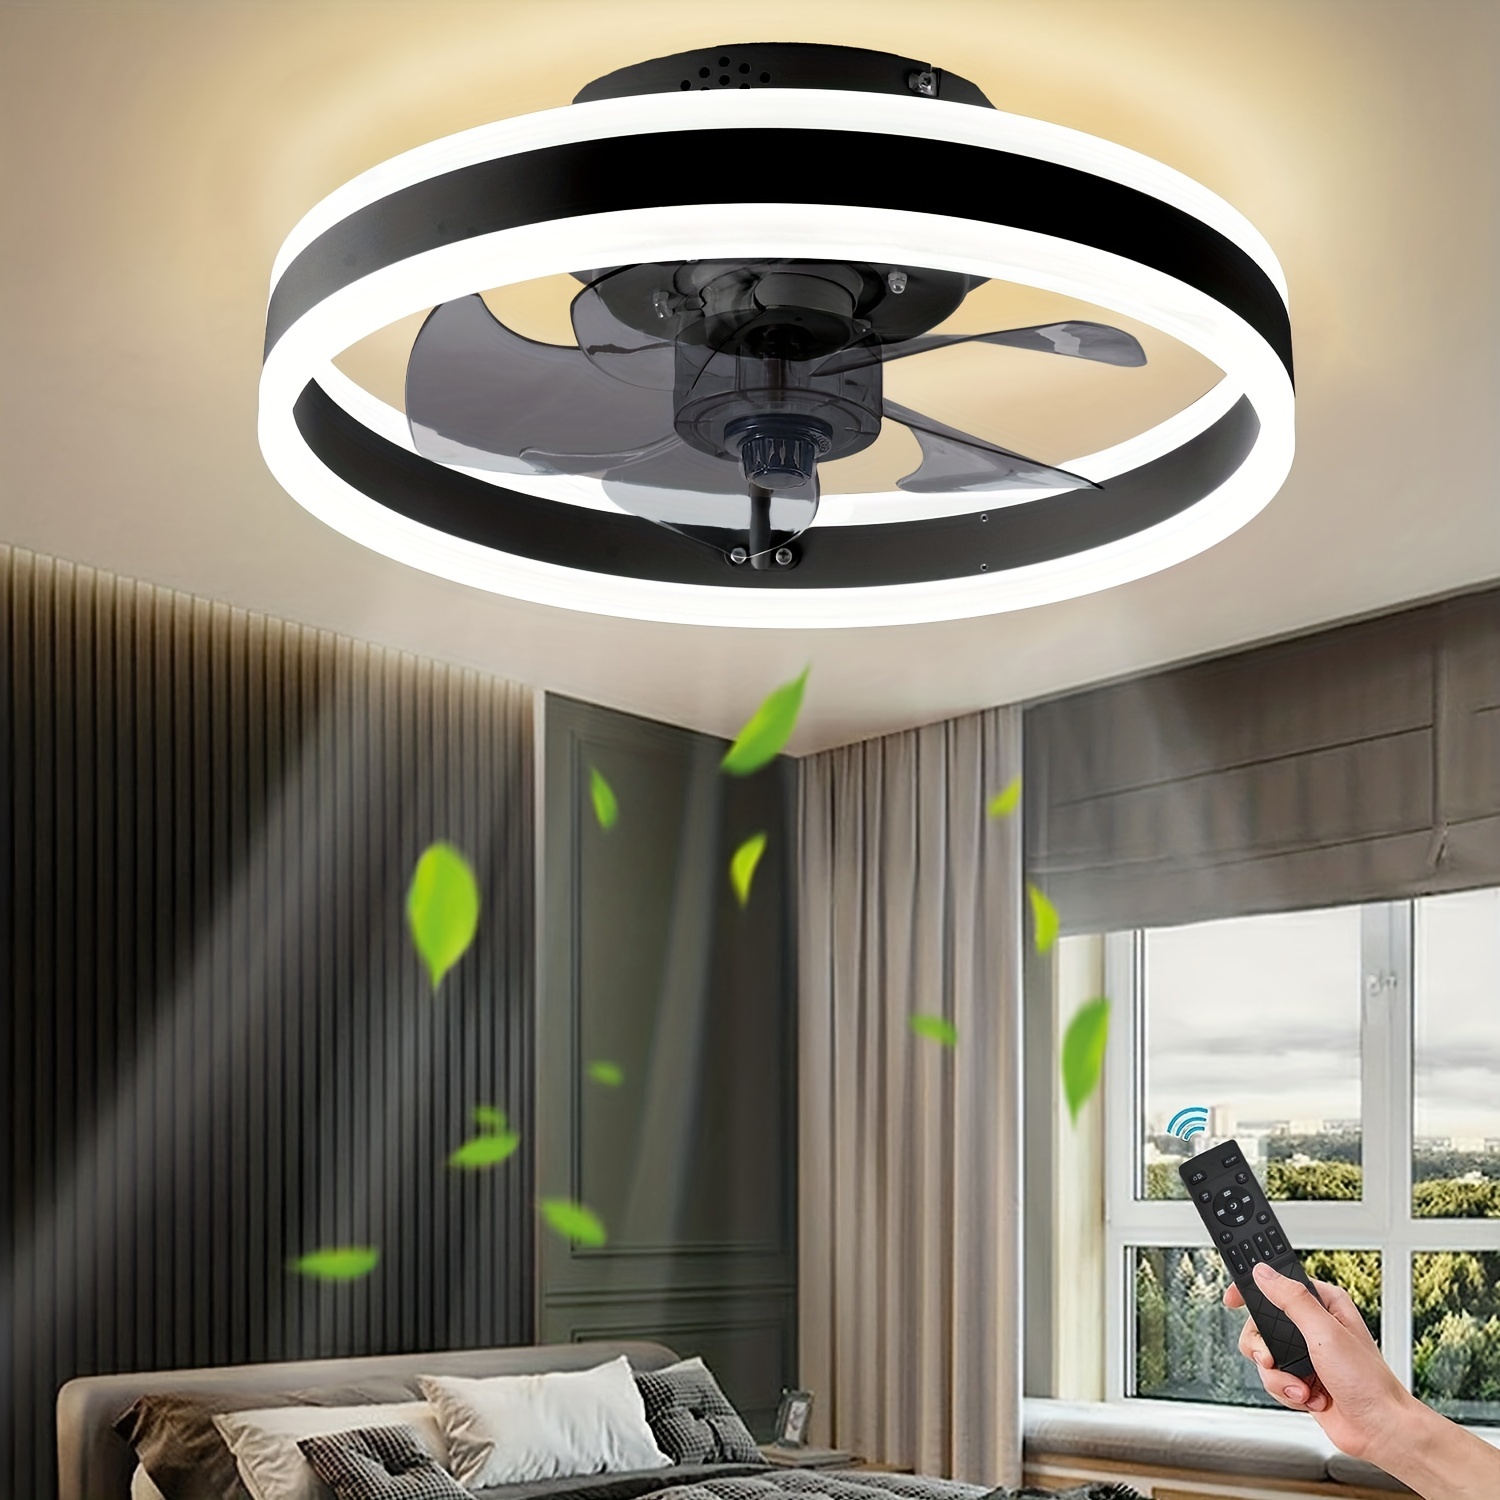 Lámpara de ventilador de techo moderna con control remoto, lámpara LED  regulable con cuchillas invisibles retráctiles, motor silencioso, para sala  de